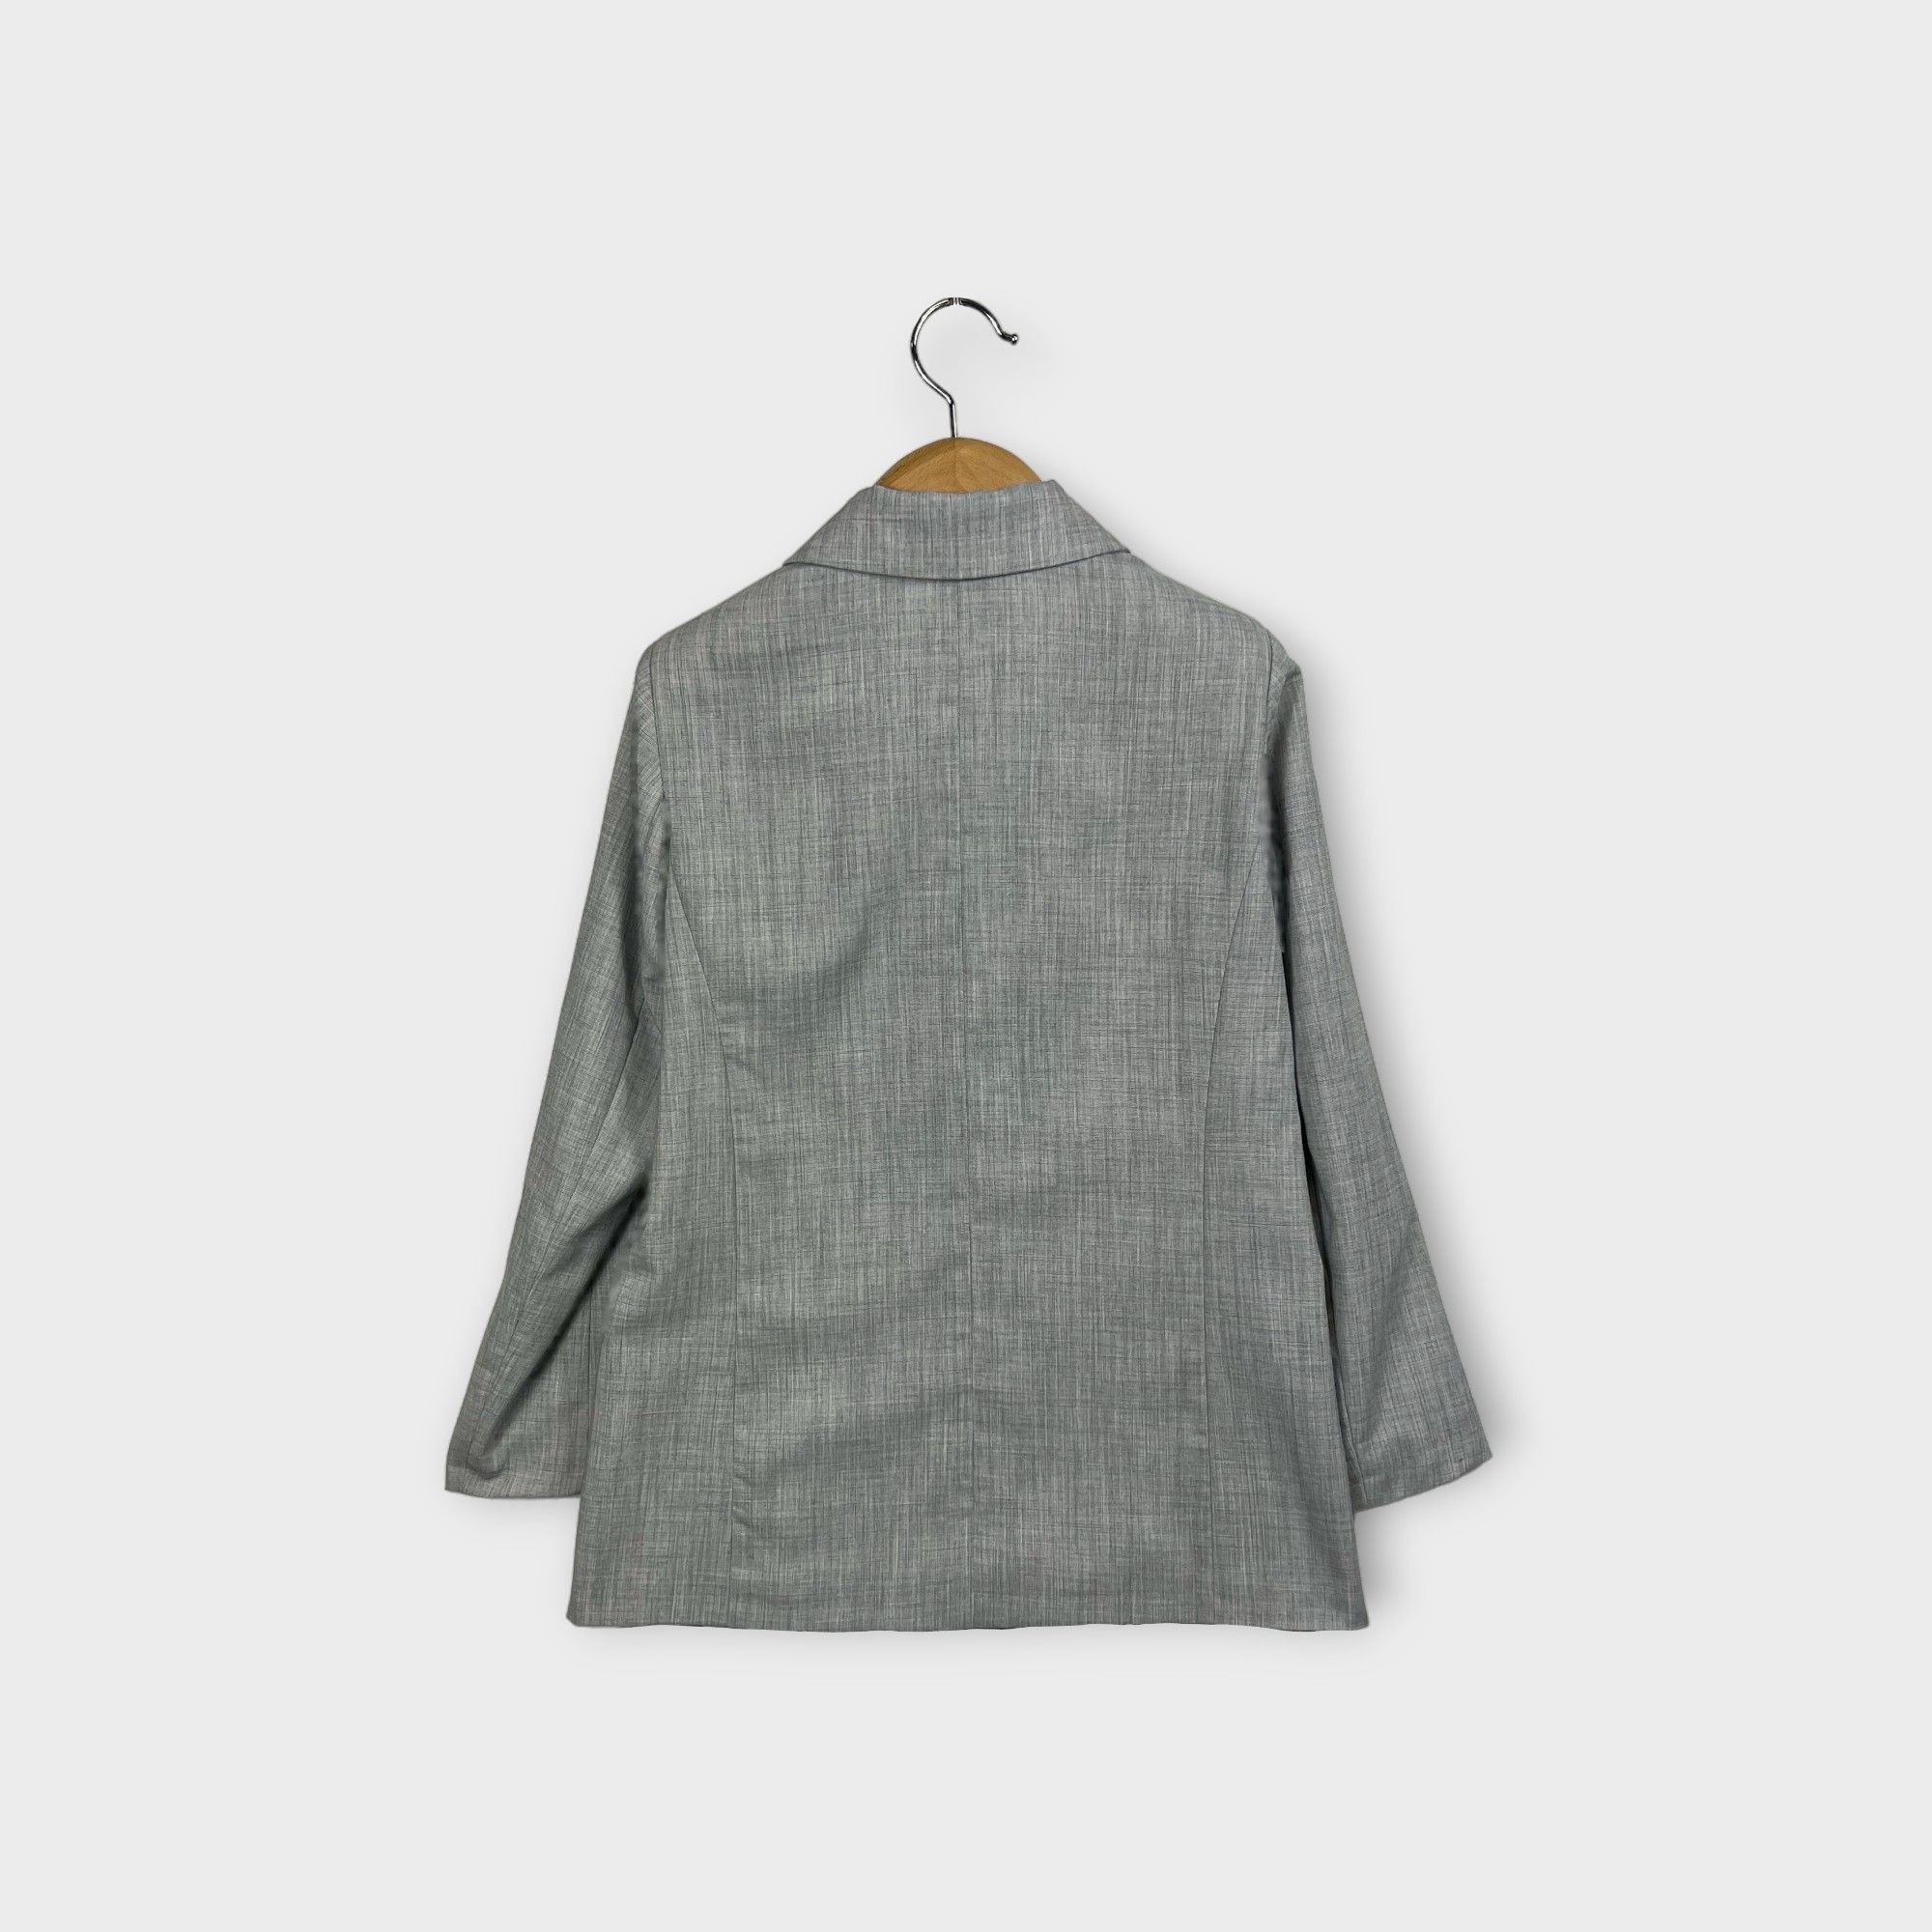 images/virtuemart/product/HELLEH giacca donna doppio petto costruzione sartoriale colore grigio 2.jpg